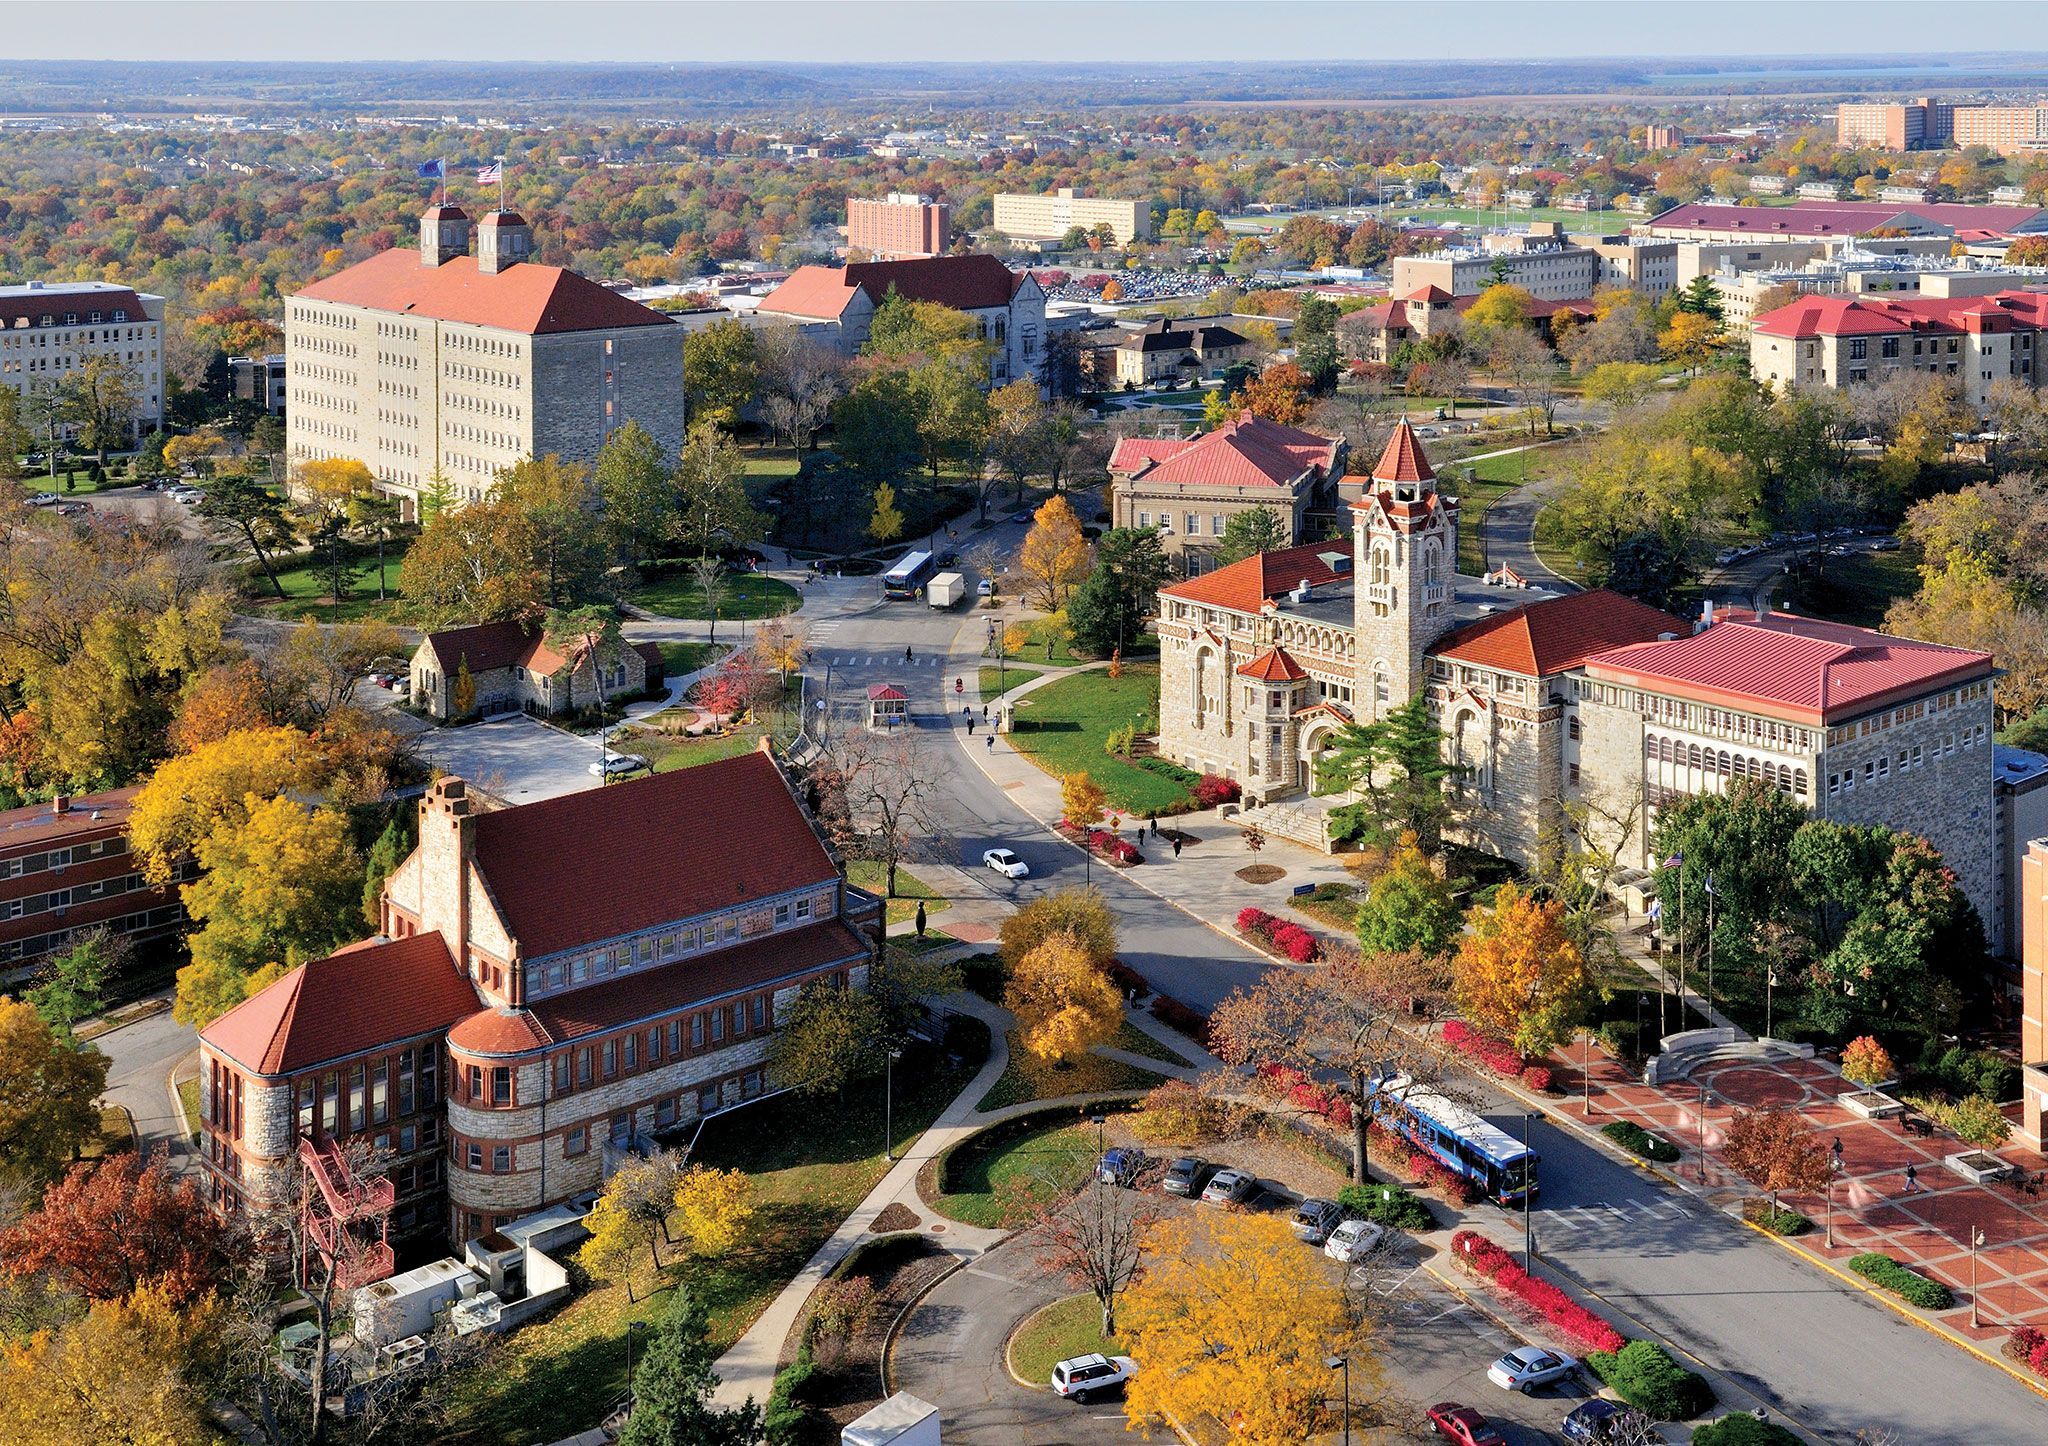 Khuôn viên của trường Đại học Kansas, Mỹ, gây ấn tượng với không gian kiến trúc độc đáo, những dãy nhà mái đỏ cổ kính với phong cách tựa như “Học viện phù thủy Hogwarts” trong bộ phim Harry Porter nổi tiếng.